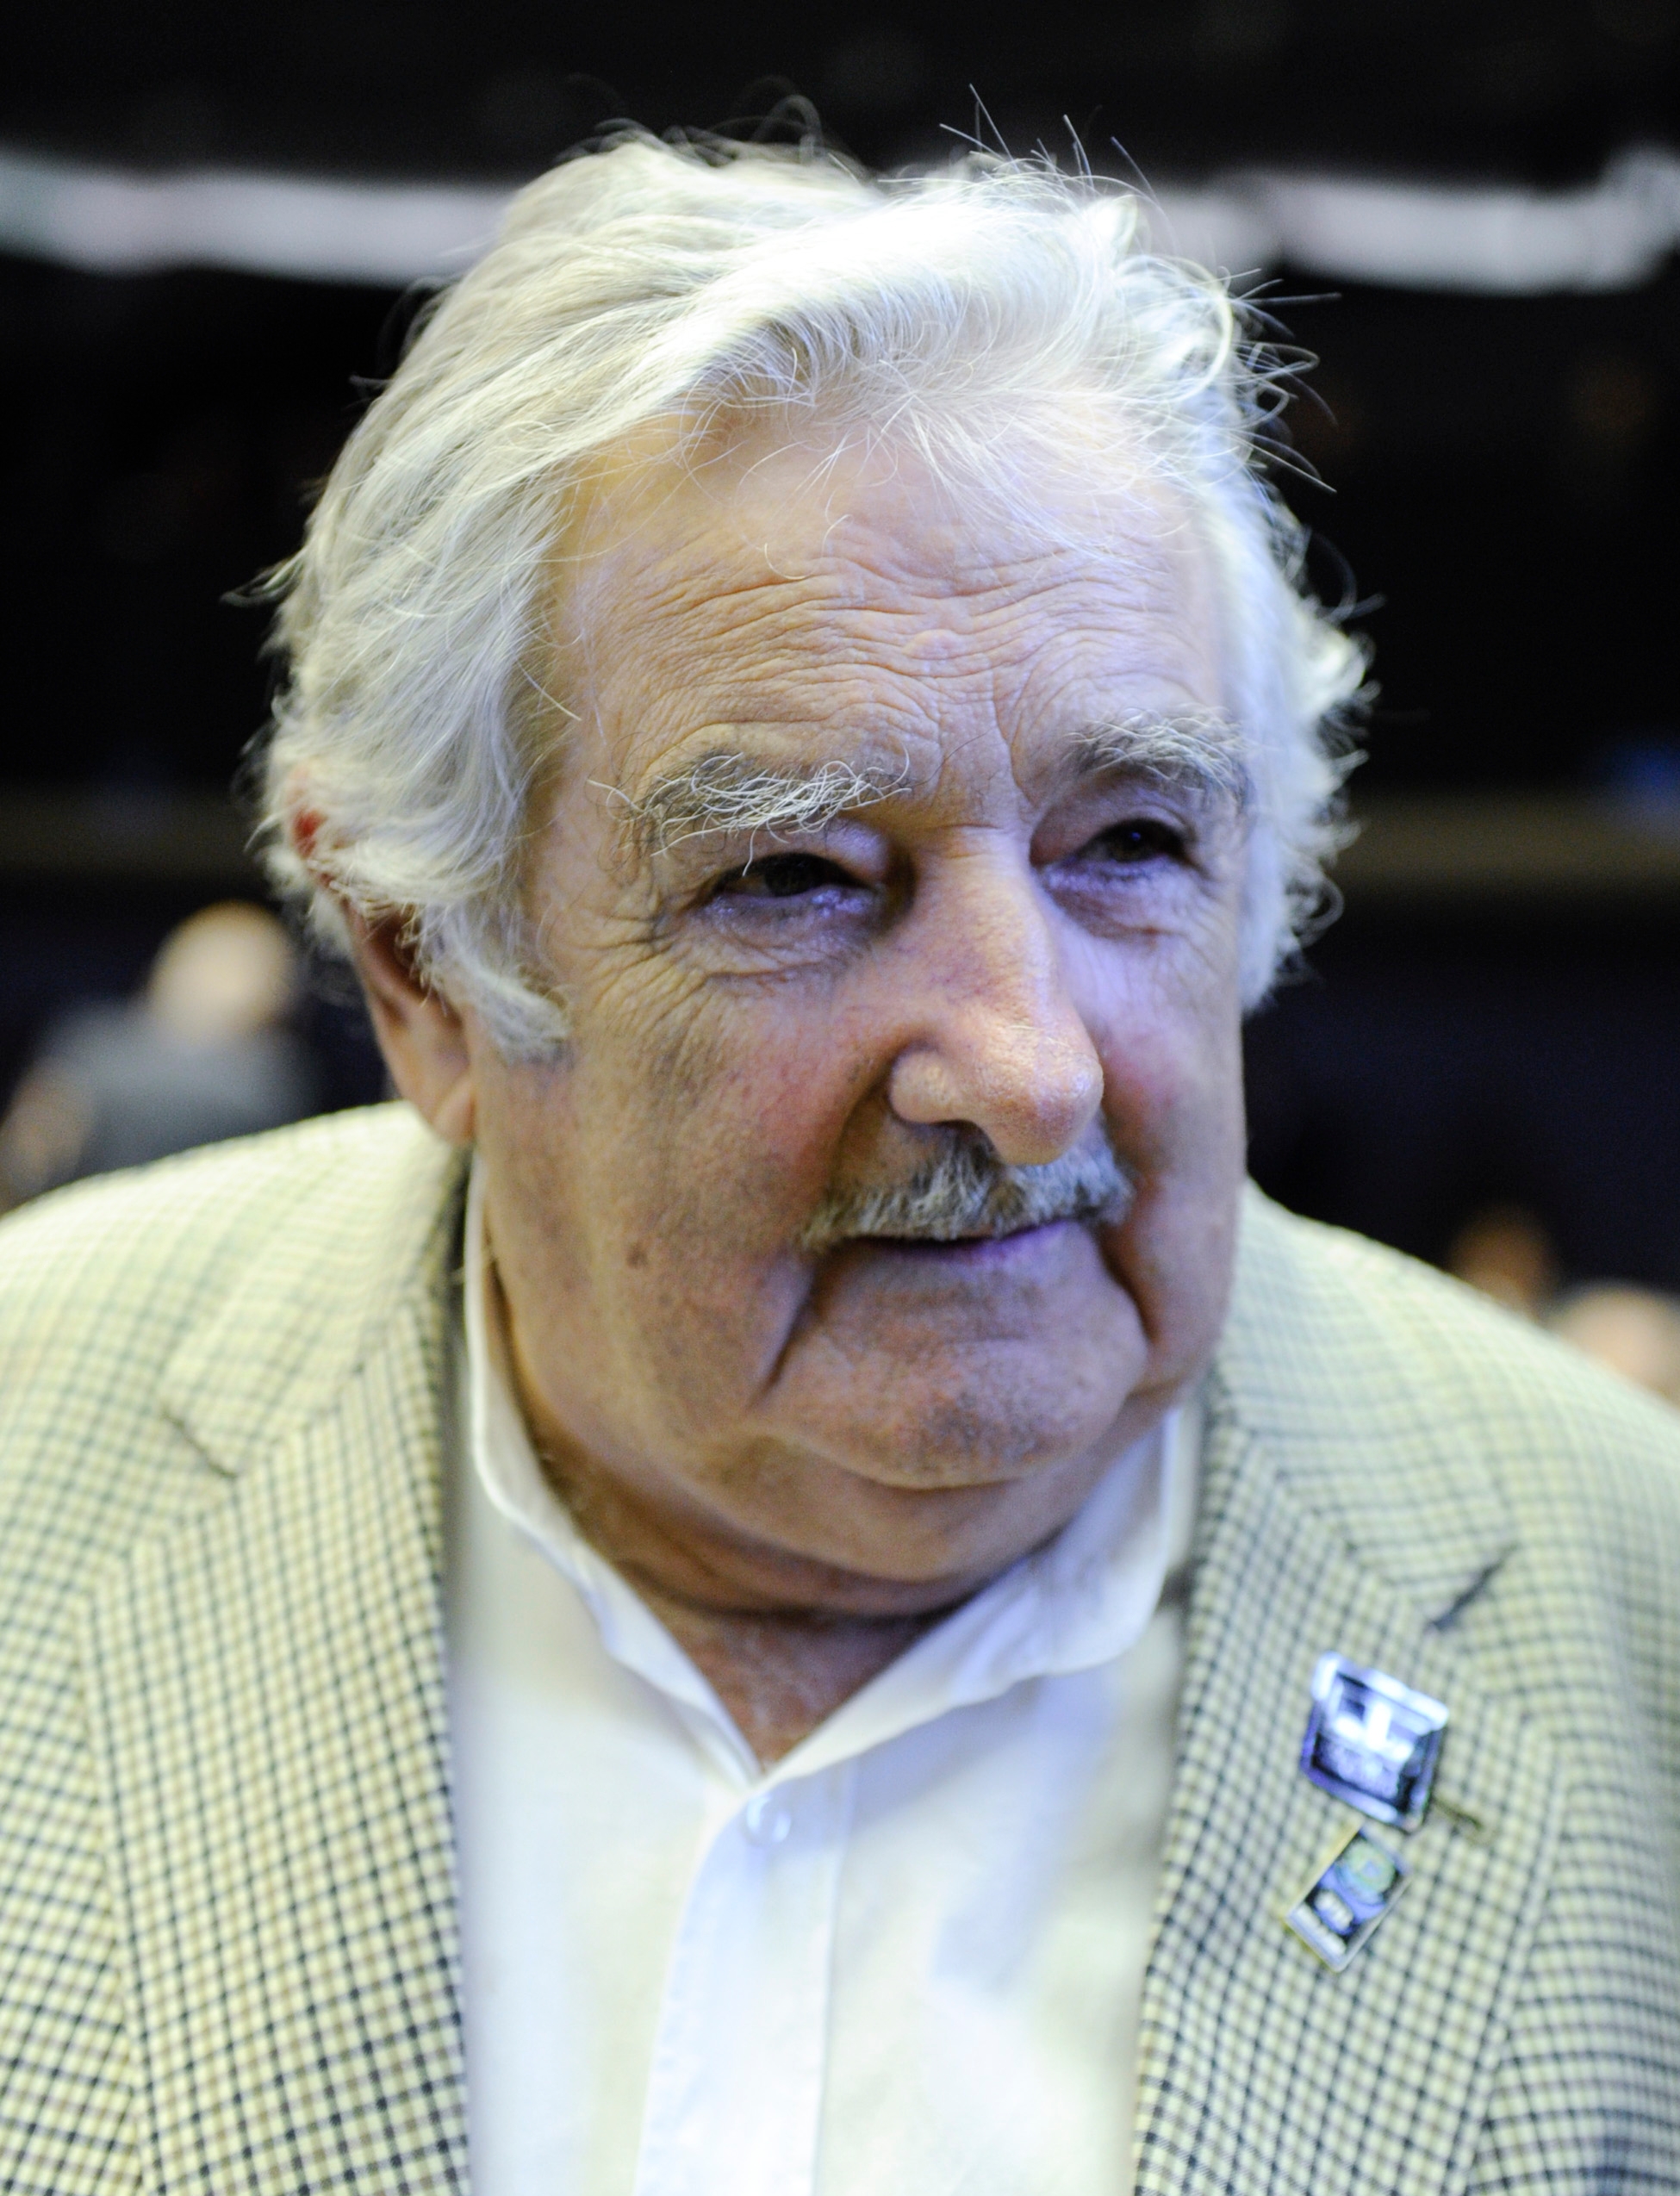 auteur Jose Mujica de la citation Si nous vivions selon nos moyens - en étant prudent - les 7 milliards de personnes dans le monde pourraient avoir tout ce dont ils avaient besoin. La politique mondiale devrait évoluer dans cette direction. Mais nous considérons comme des gens et des pays, pas comme une espèce.